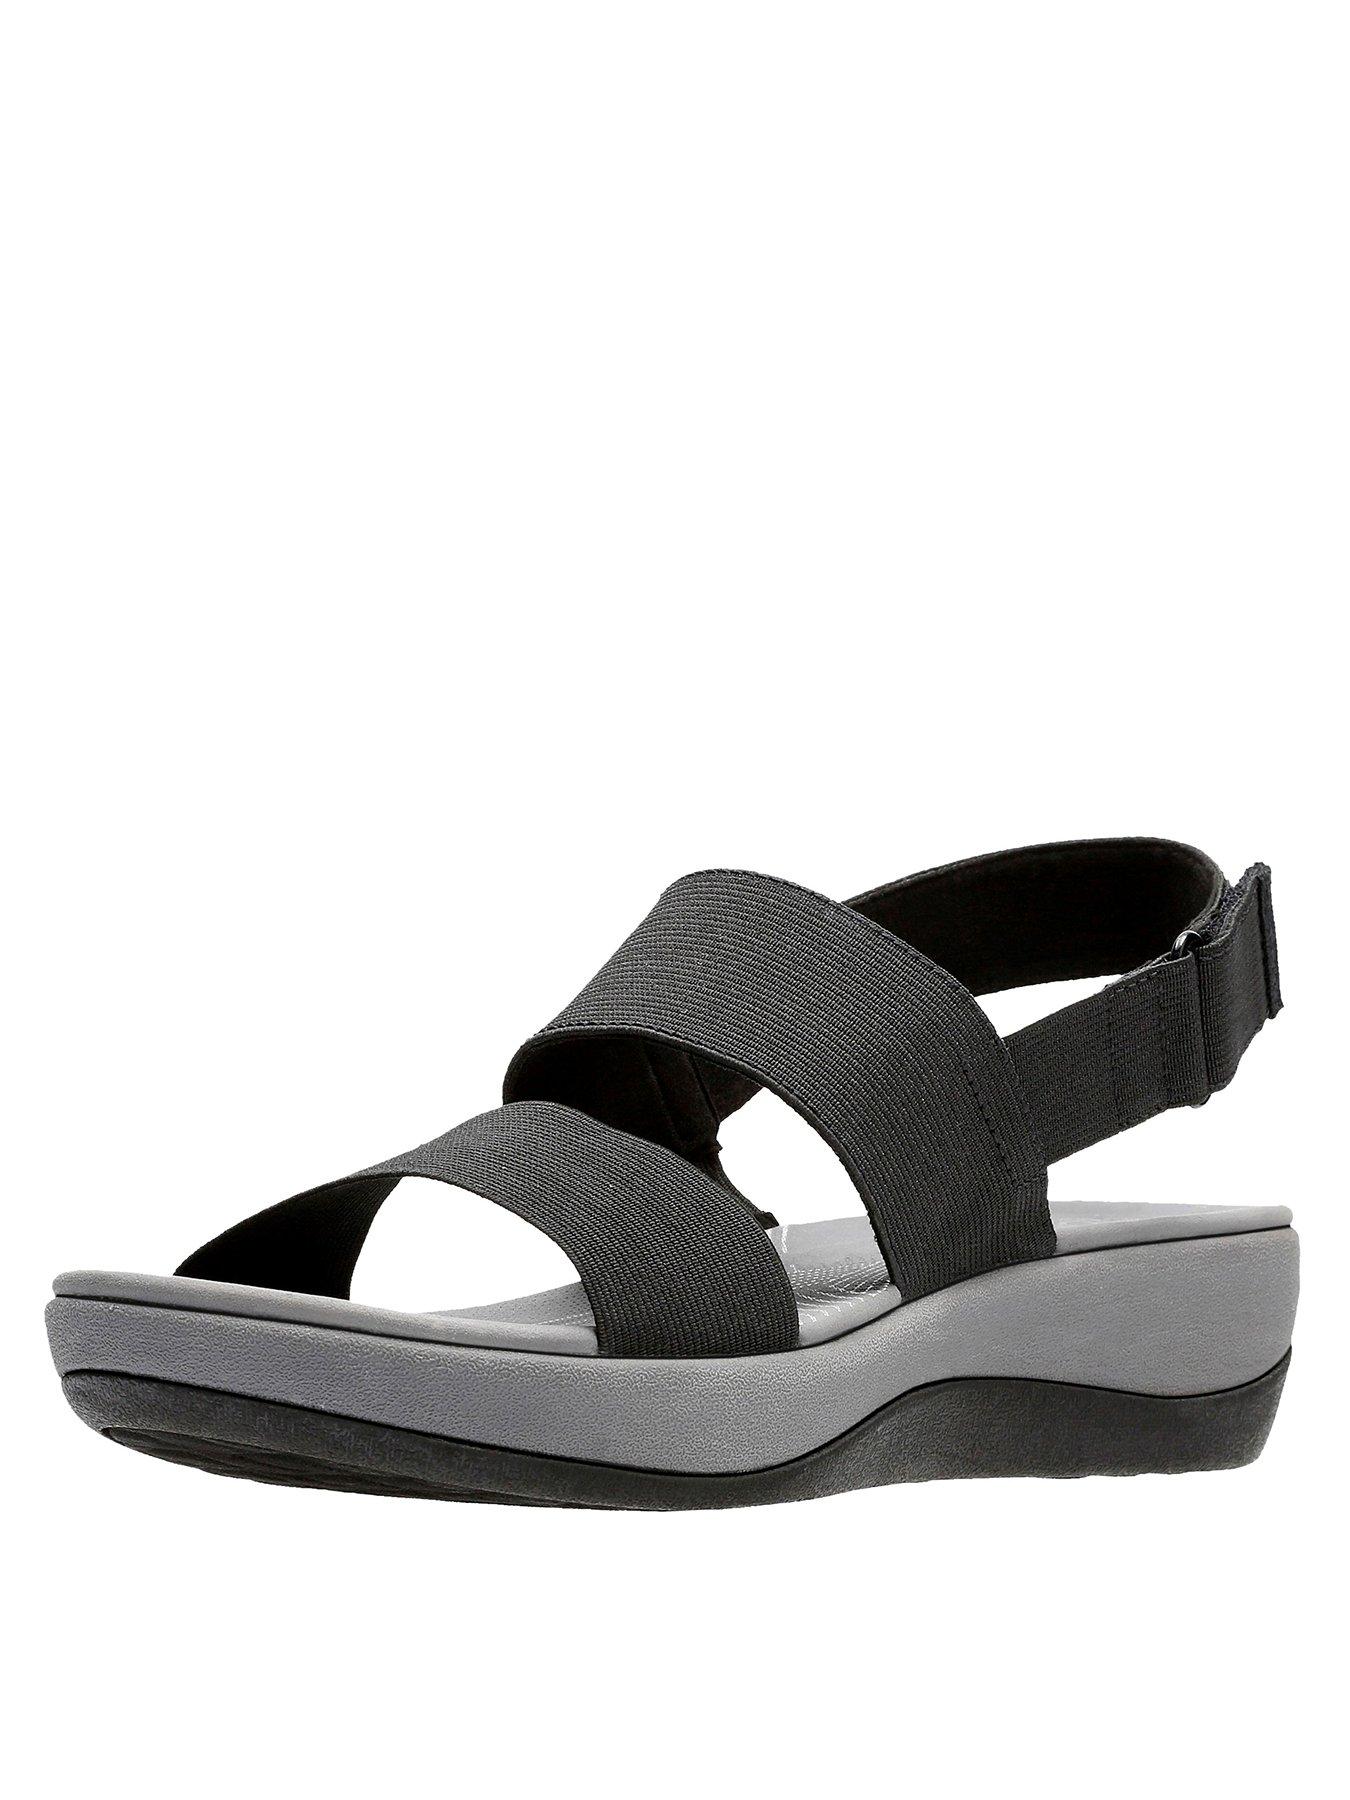 clarks sandals size 3